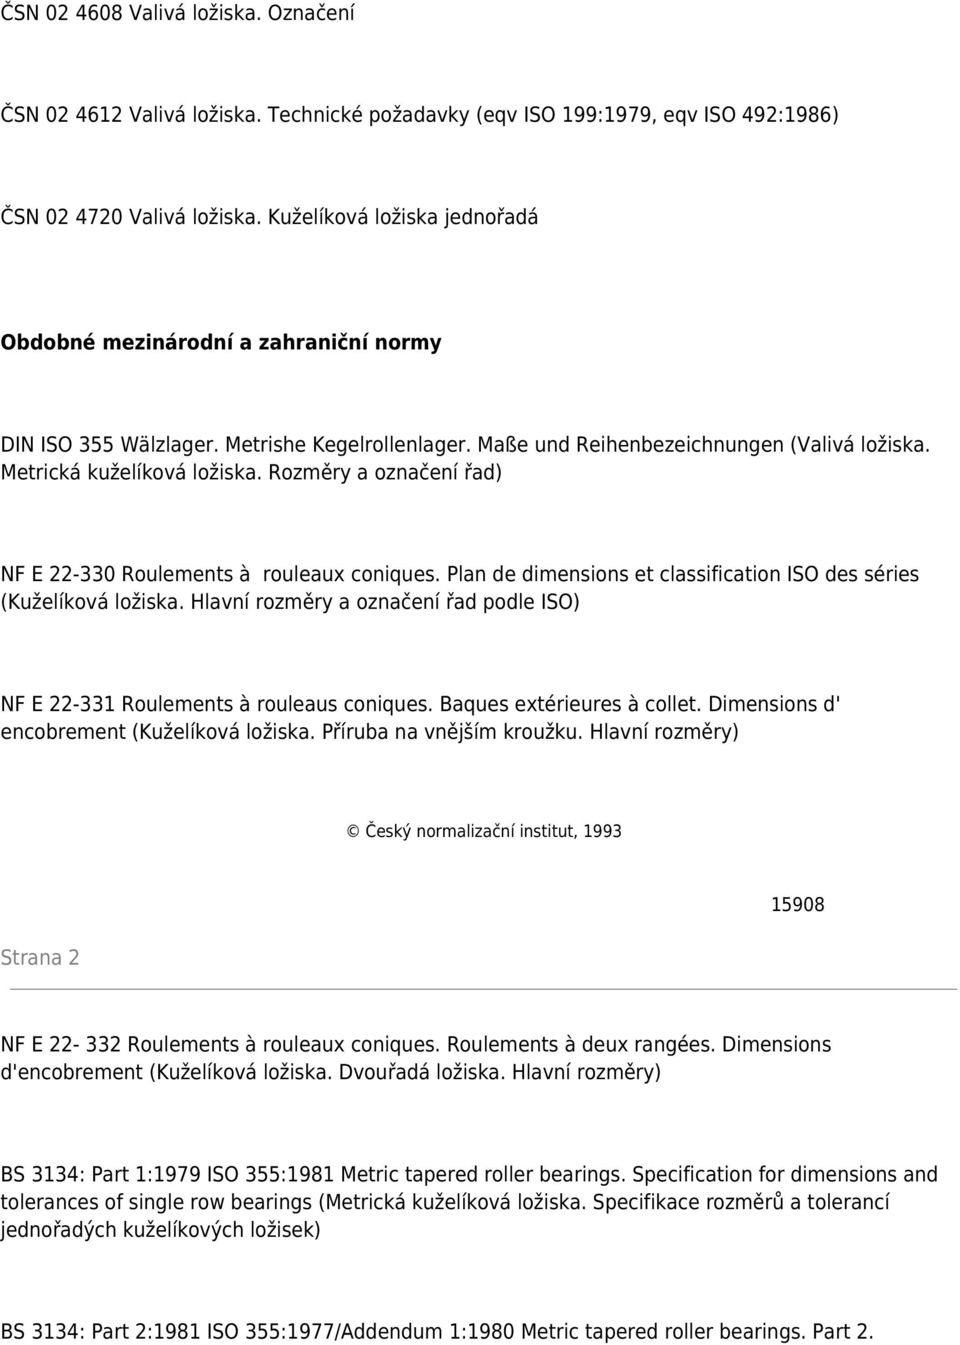 Rozměry a označení řad) NF E 22-330 Roulements à rouleaux coniques. Plan de dimensions et classification ISO des séries (Kuželíková ložiska.